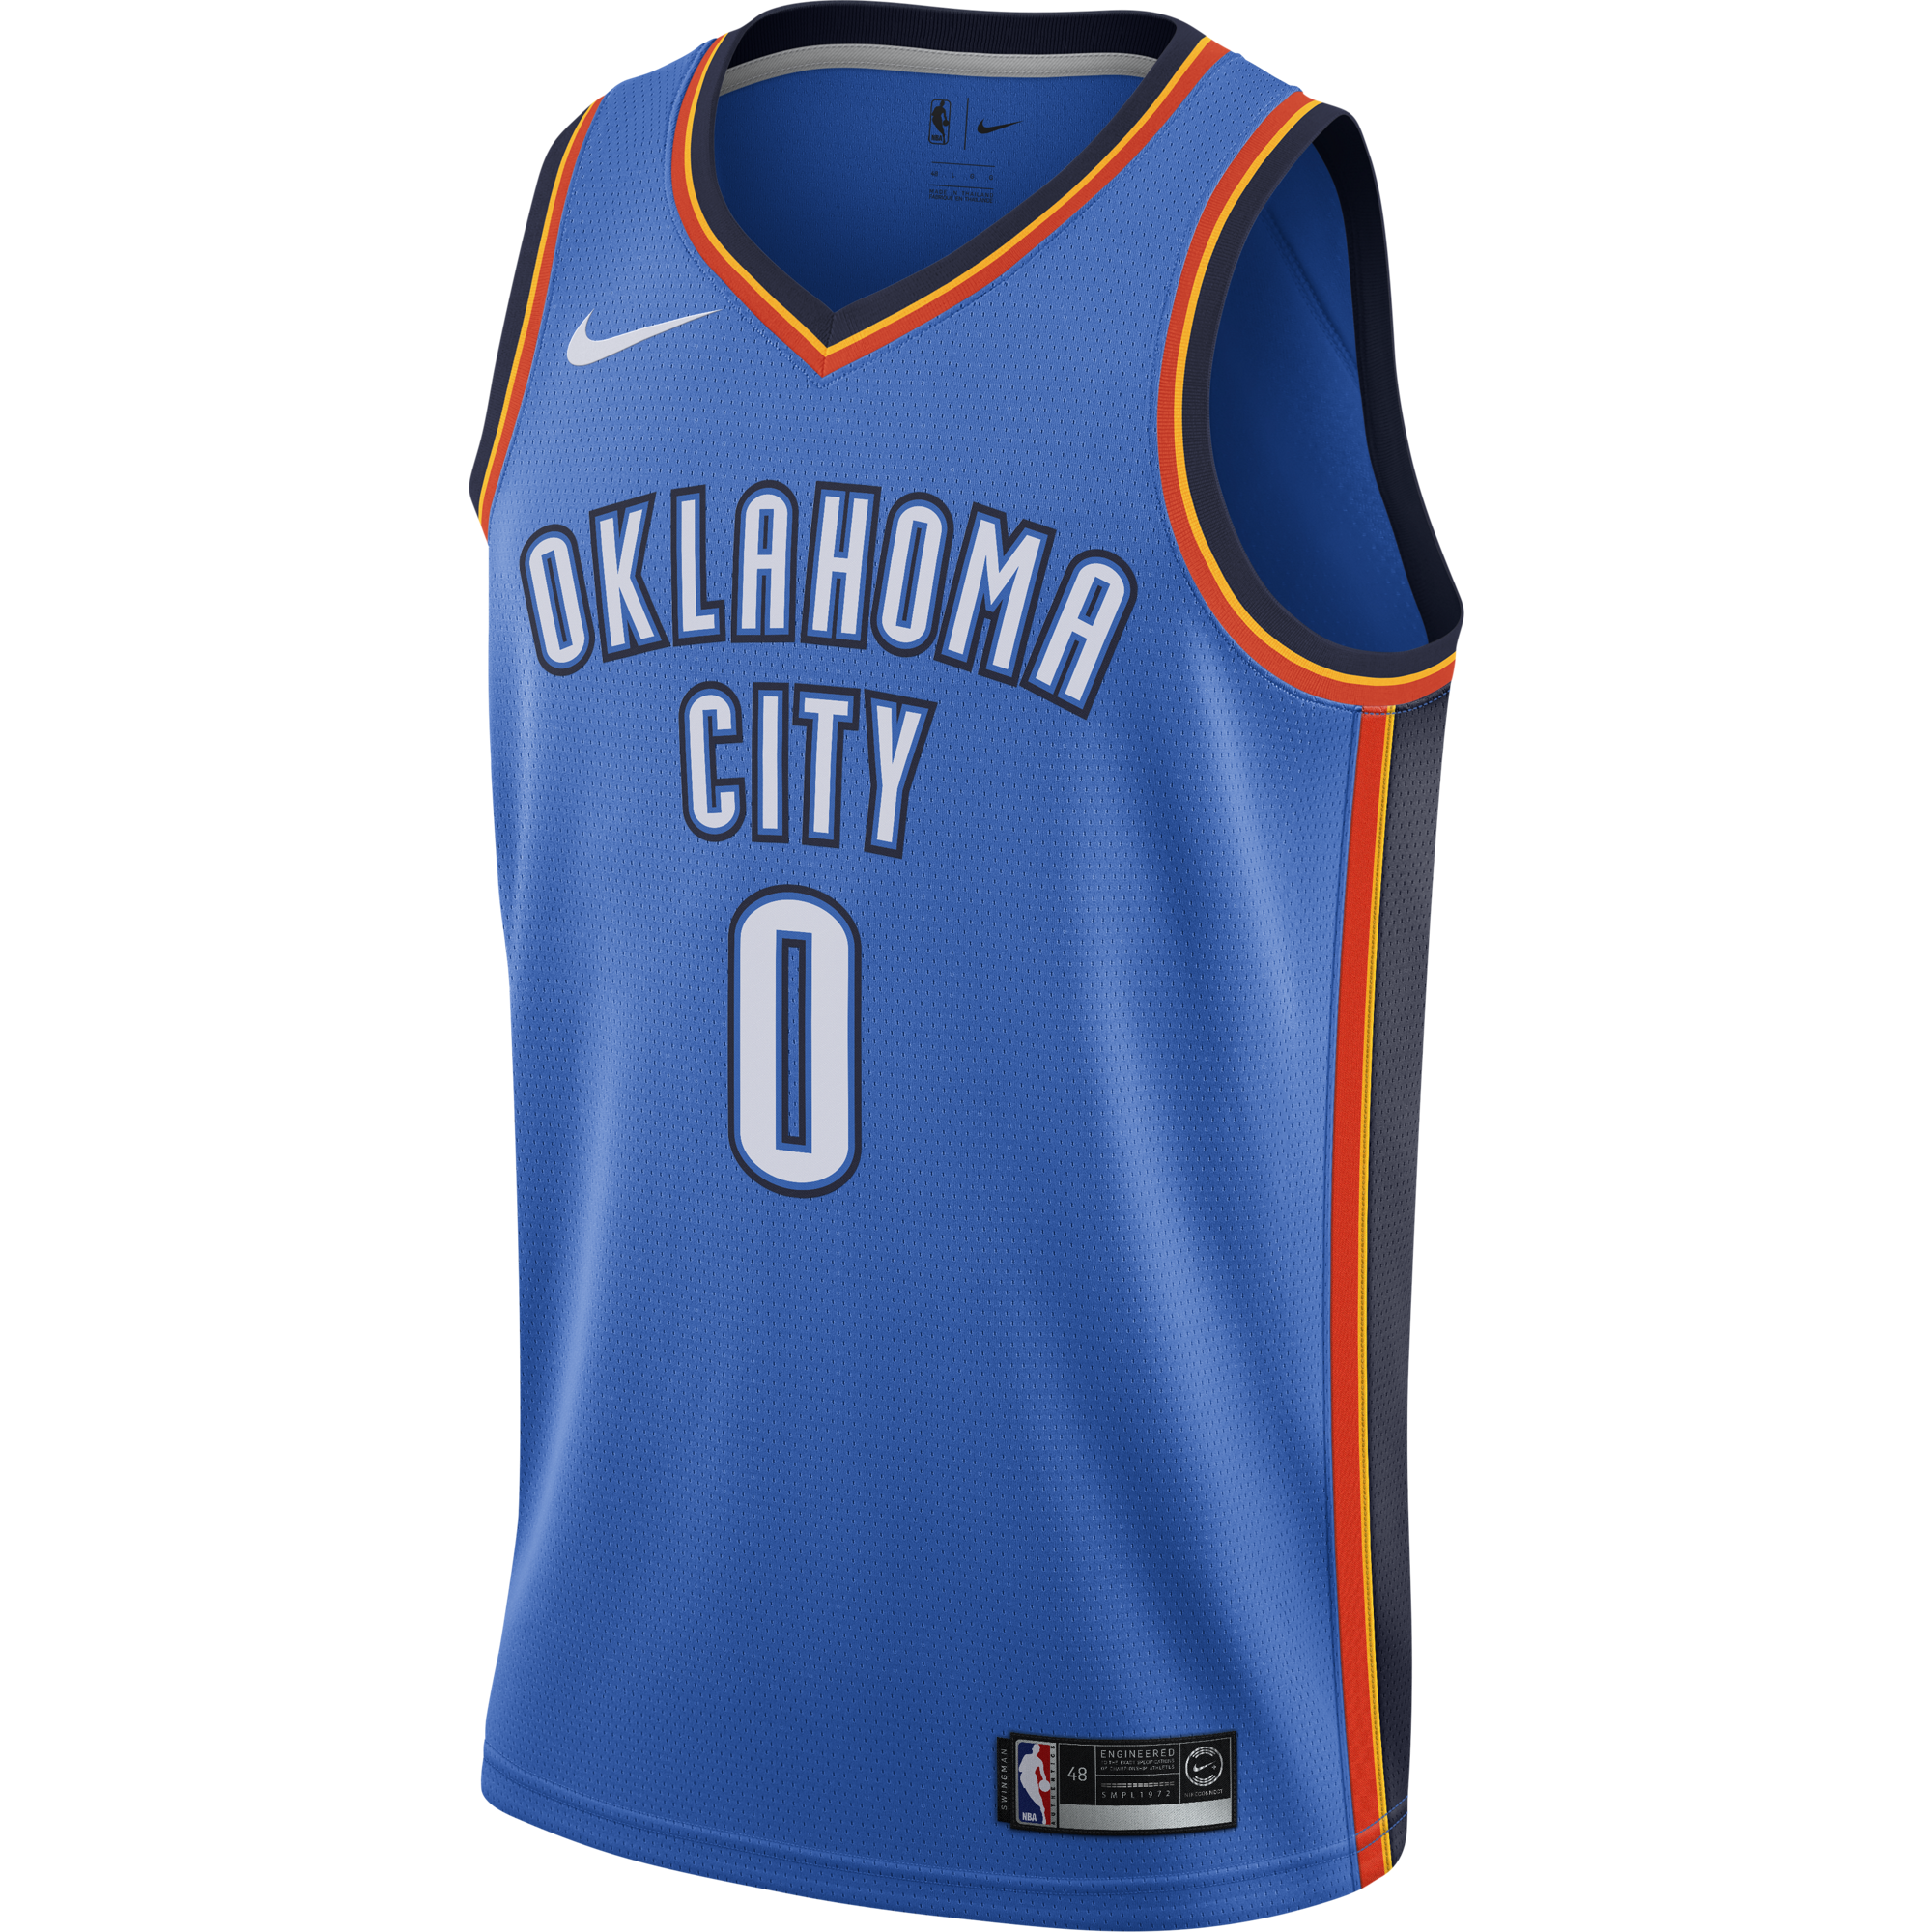 NIKE NBA OKLAHOMA CITY THUNDER ROAD SIGNAL BLUE